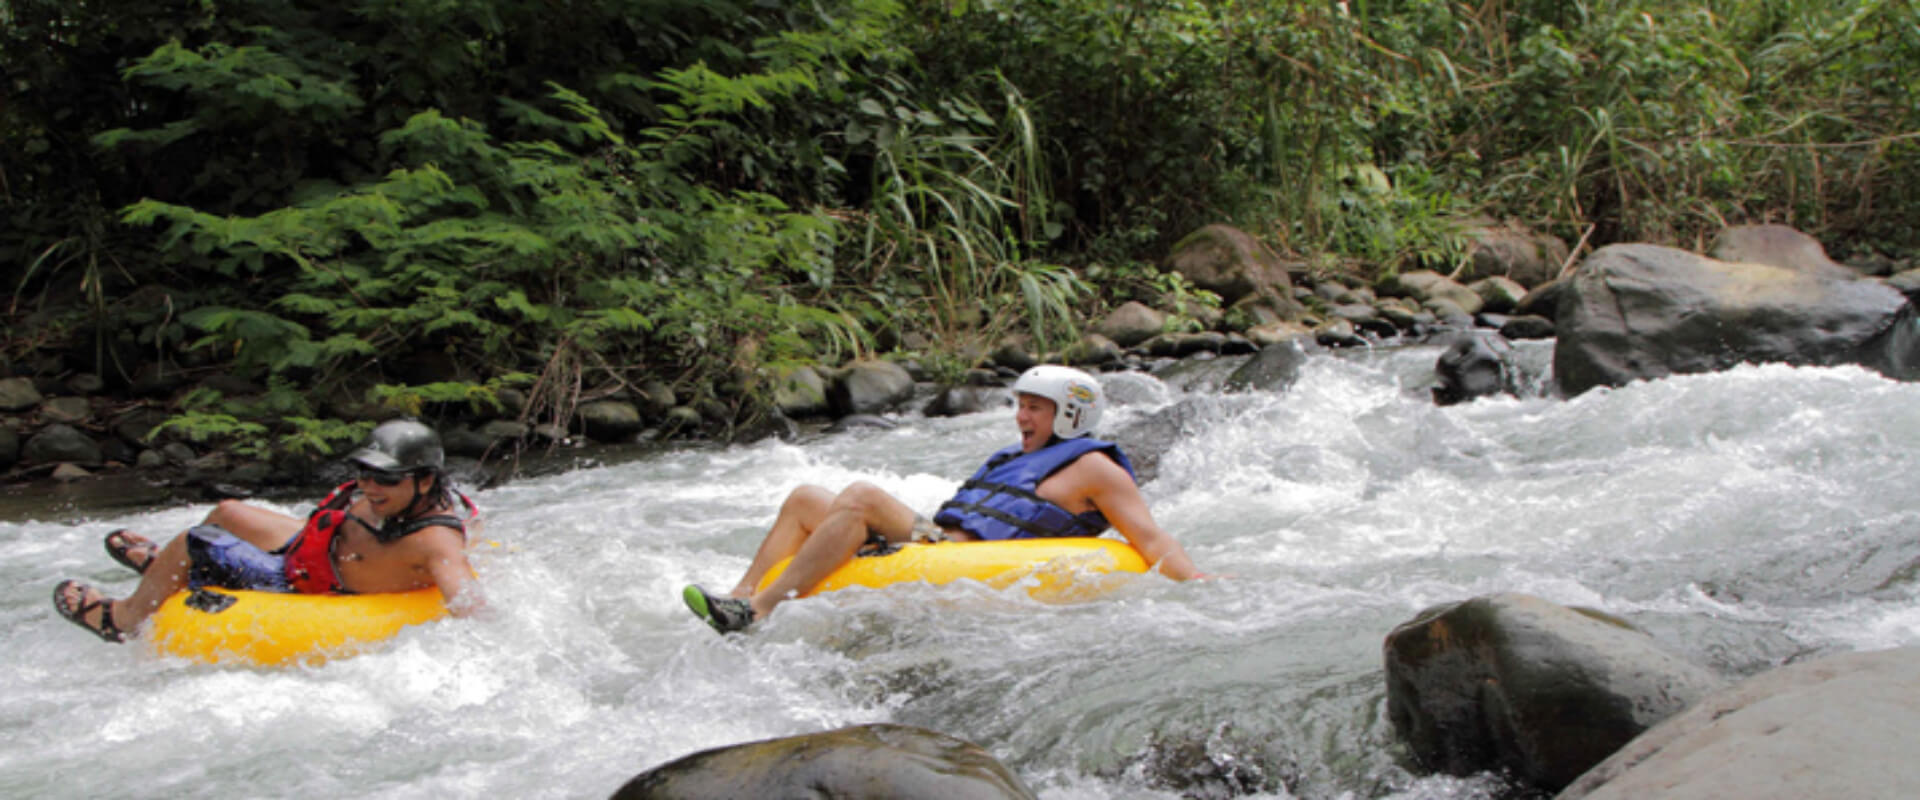 Recorrido combinado de Club Río multi-aventura | Costa Rica Jade Tours